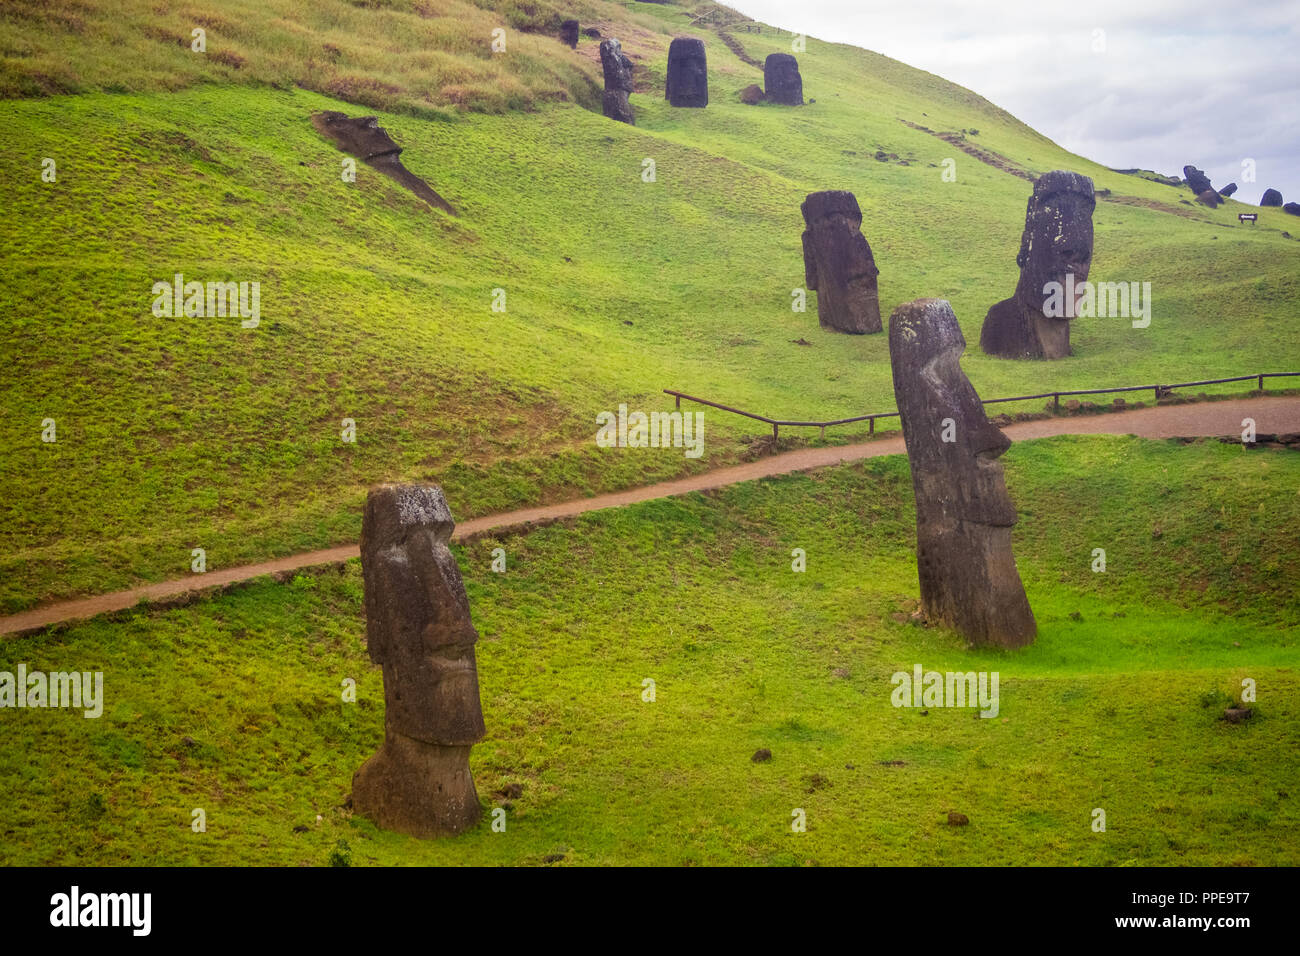 Rano Raraku vulcano, cava del moai con molte statue incompleto. Parco Nazionale di Rapa Nui, Isola di Pasqua, Cile. UNESCO - Sito Patrimonio dell'umanità. Ho Foto Stock